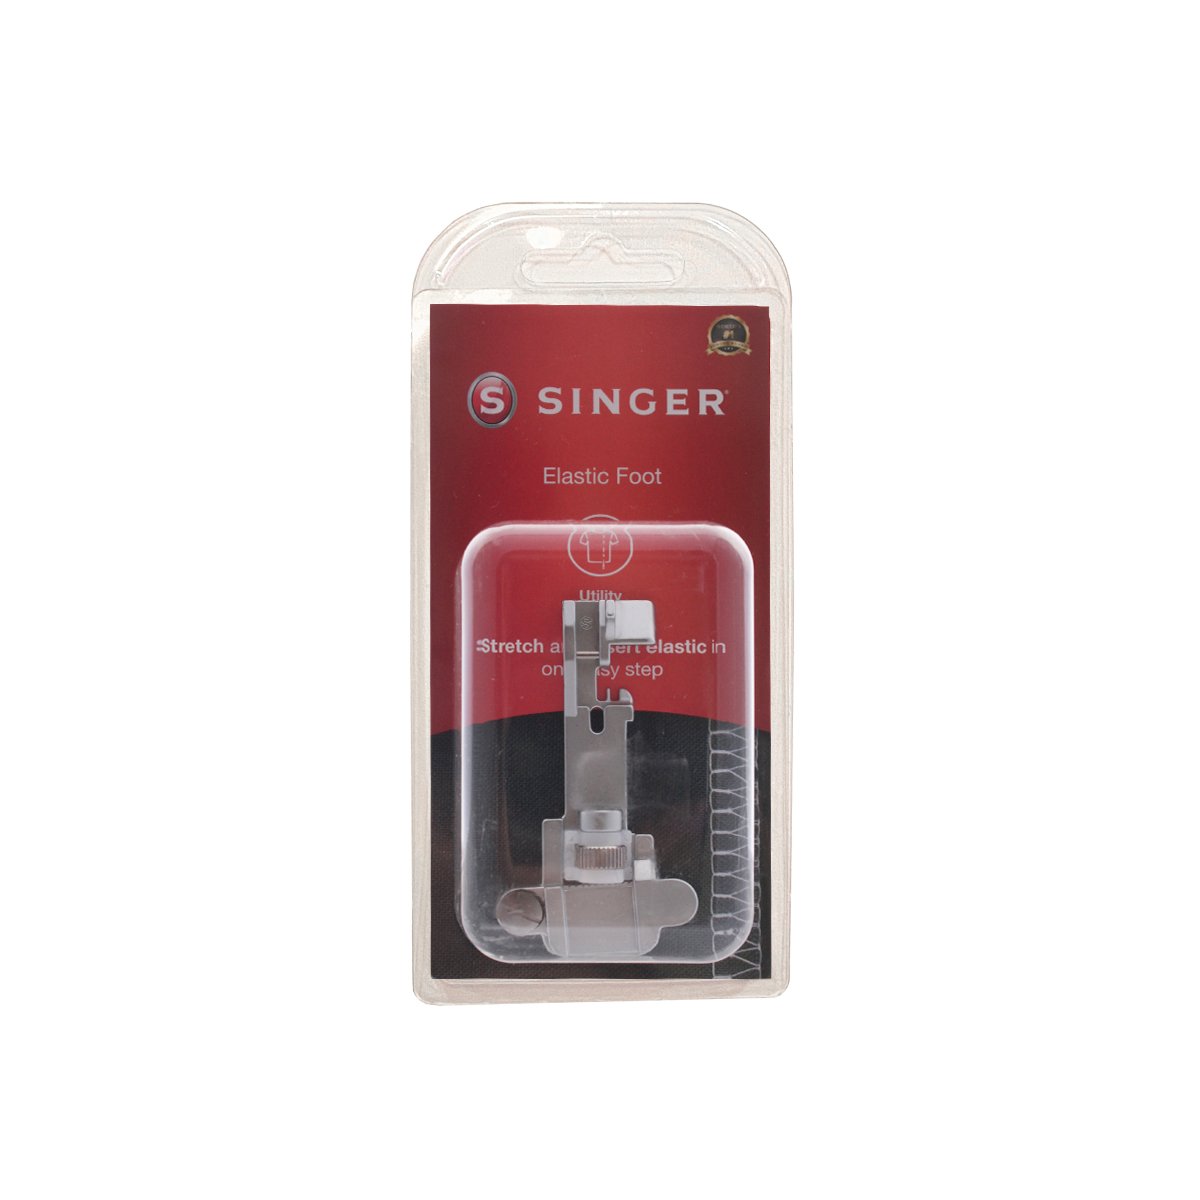 Prensatelas Singer para elástico – Overlock para estirar, colocar y ajustar el estiramiento para máquinas de coser overlock, 250060396